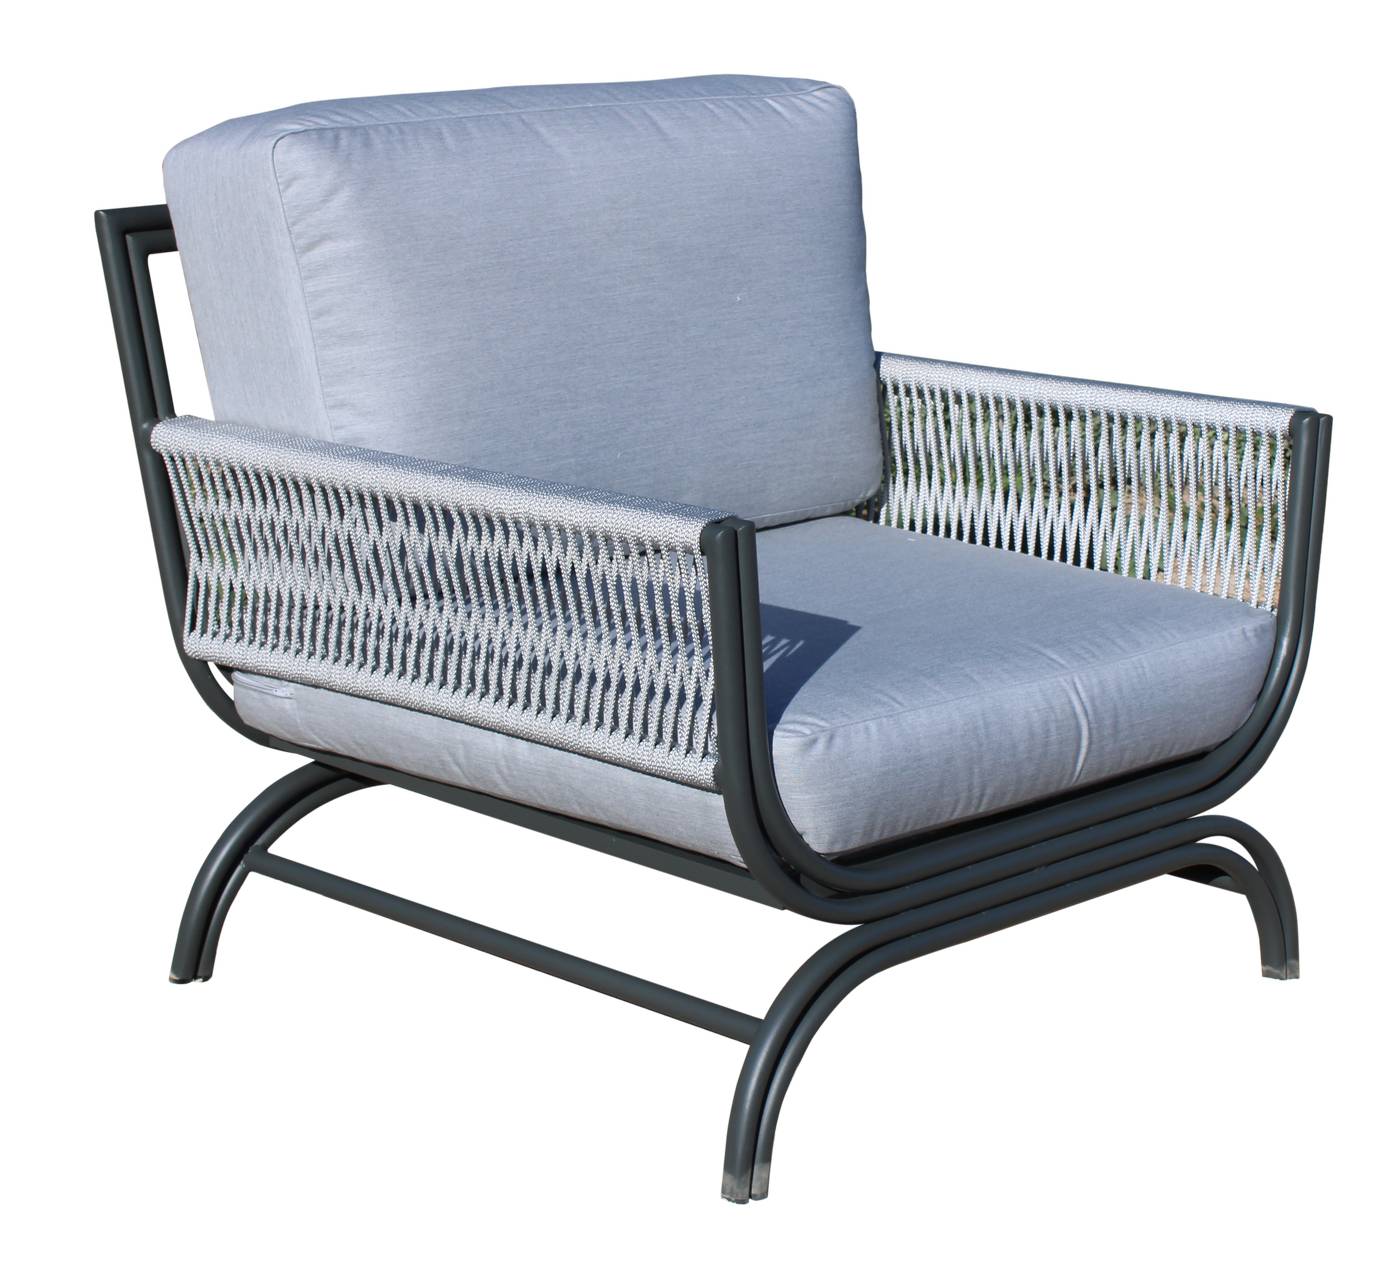 Set Aluminio Saona-10 - Conjunto de alumino y cuerda: sofá de 3 plazas + 2 sillones + 1 mesa de centro + 2 reposapiés. Colores: blanco, antracita, marrón, champagne o plata.